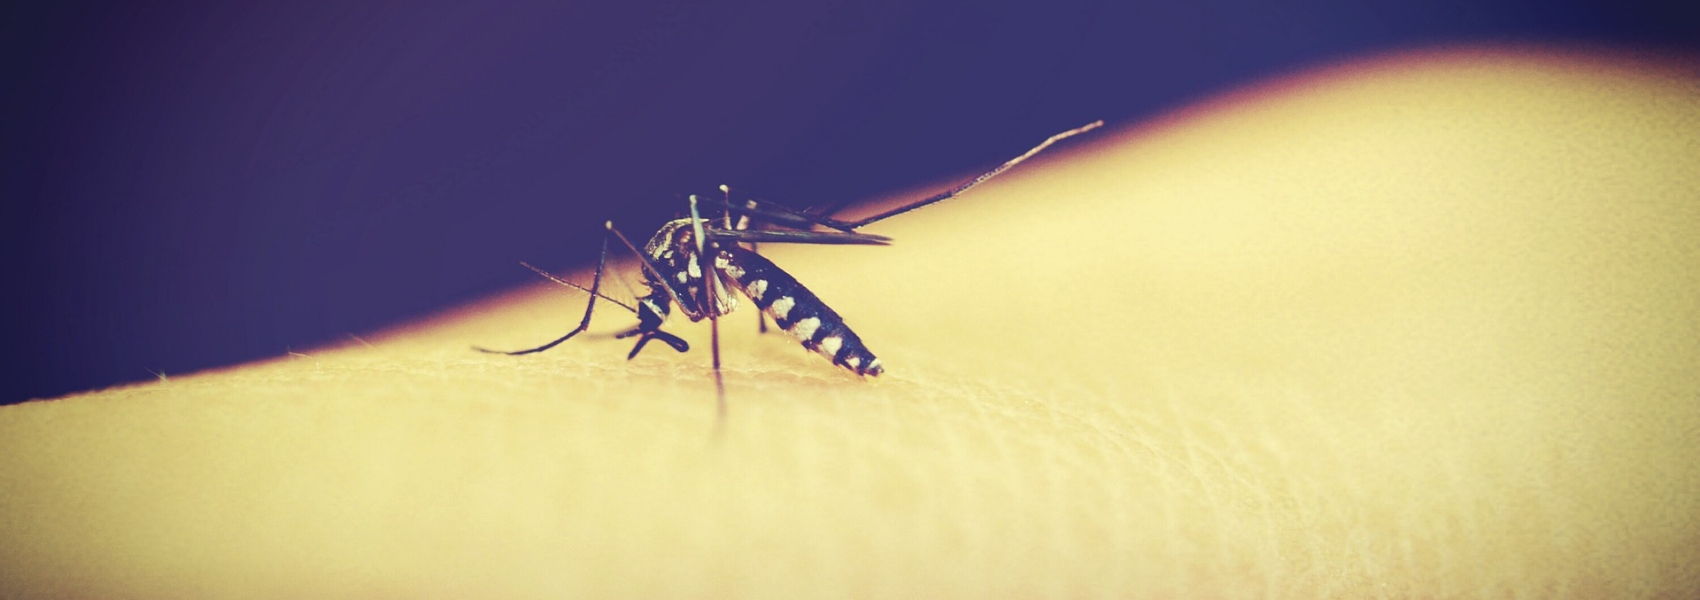 inquérito sobre malária